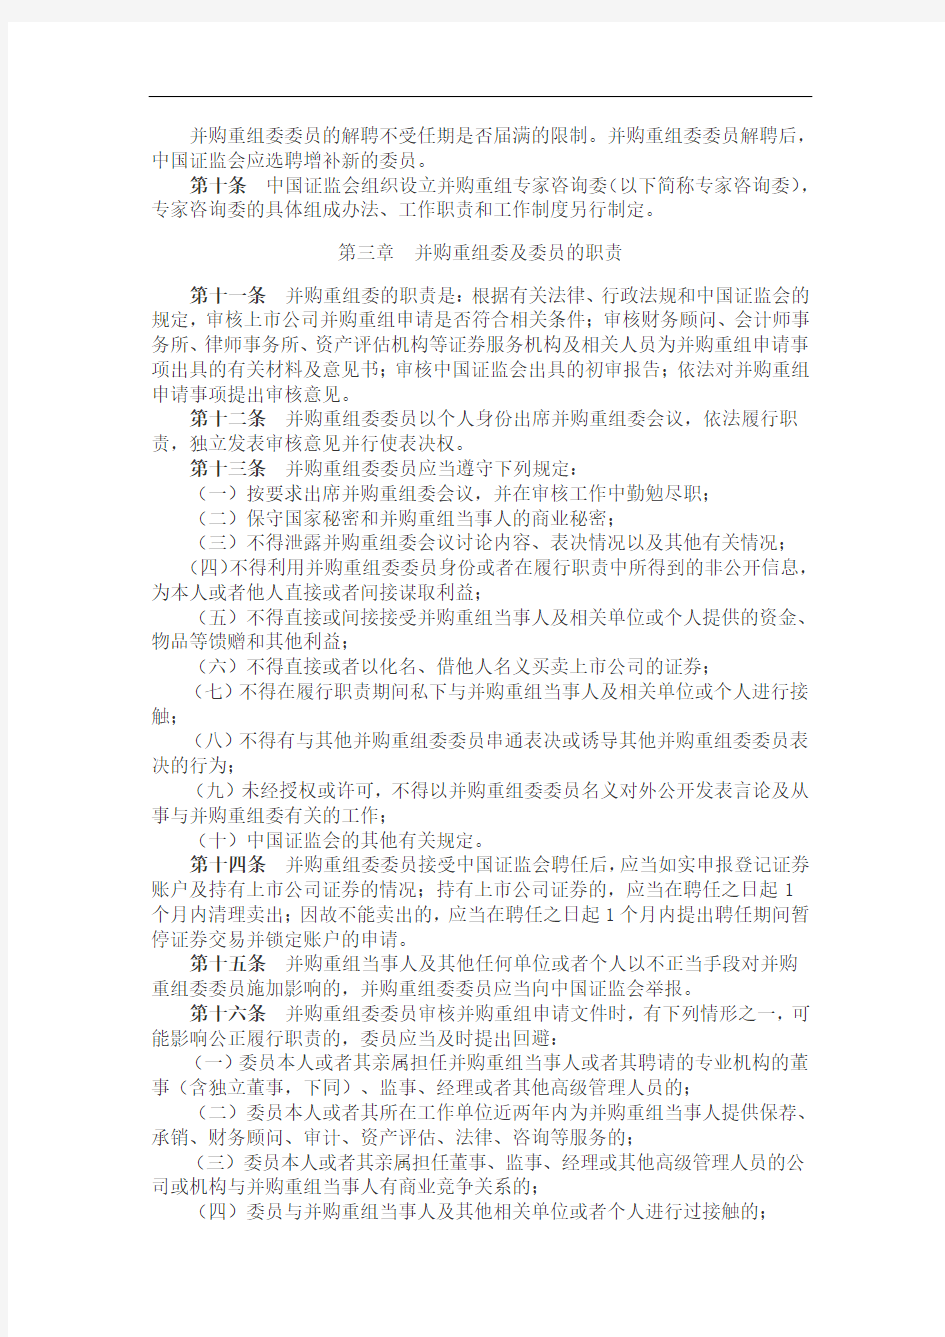 中国证券监督管理委员会上市公司并购重组审核委员会工作规程(2011年修订)